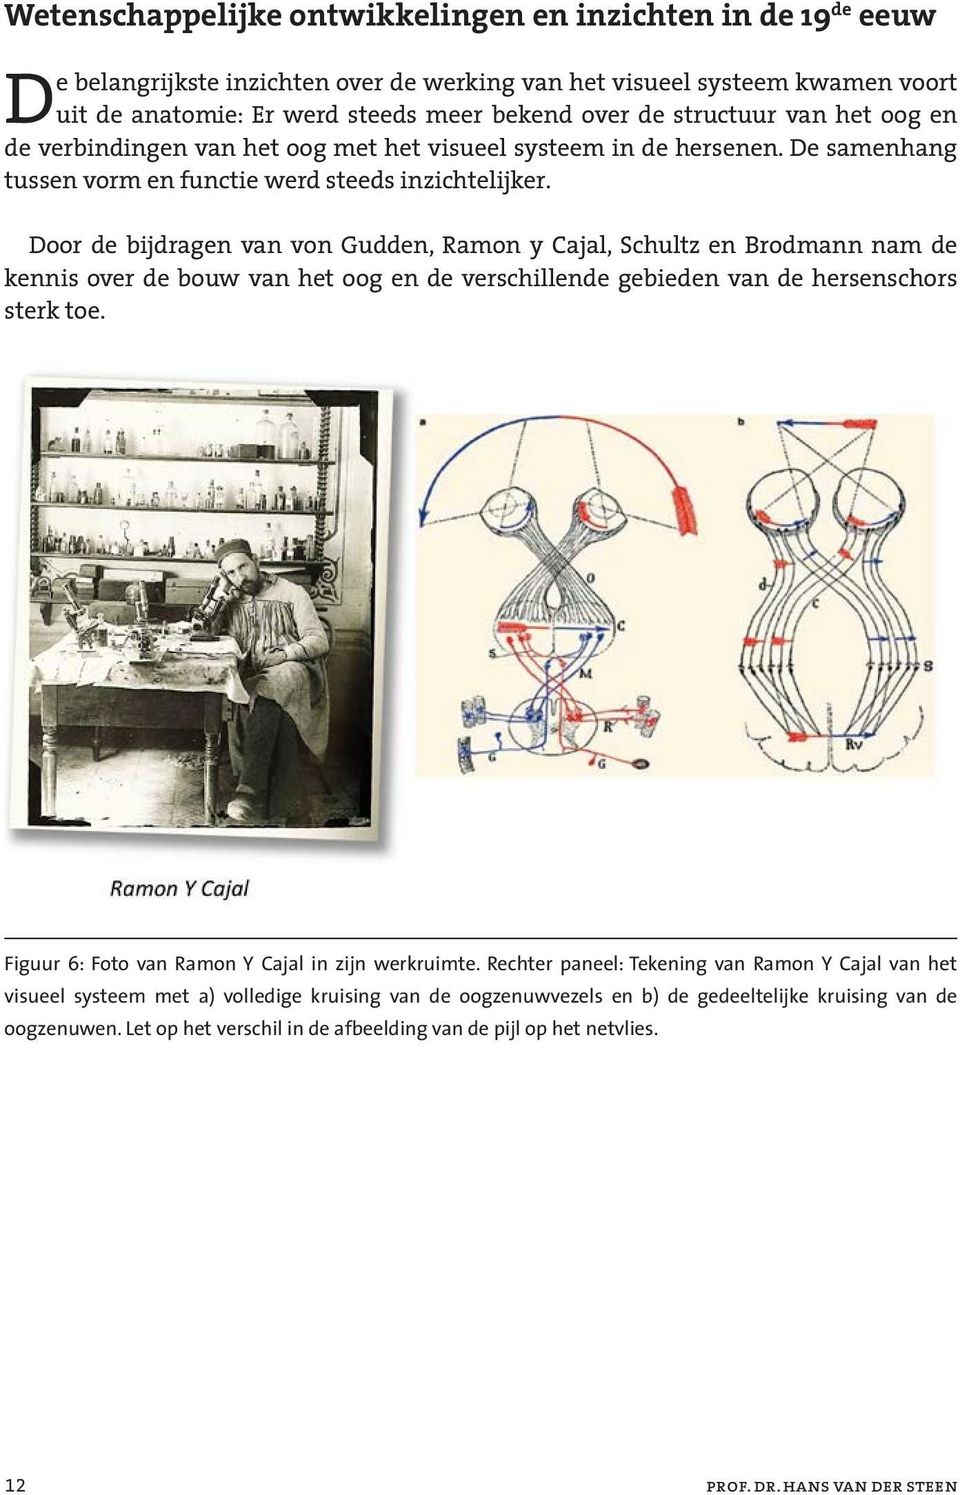 Door de bijdragen van von Gudden, Ramon y Cajal, Schultz en Brodmann nam de kennis over de bouw van het oog en de verschillende gebieden van de hersenschors sterk toe.